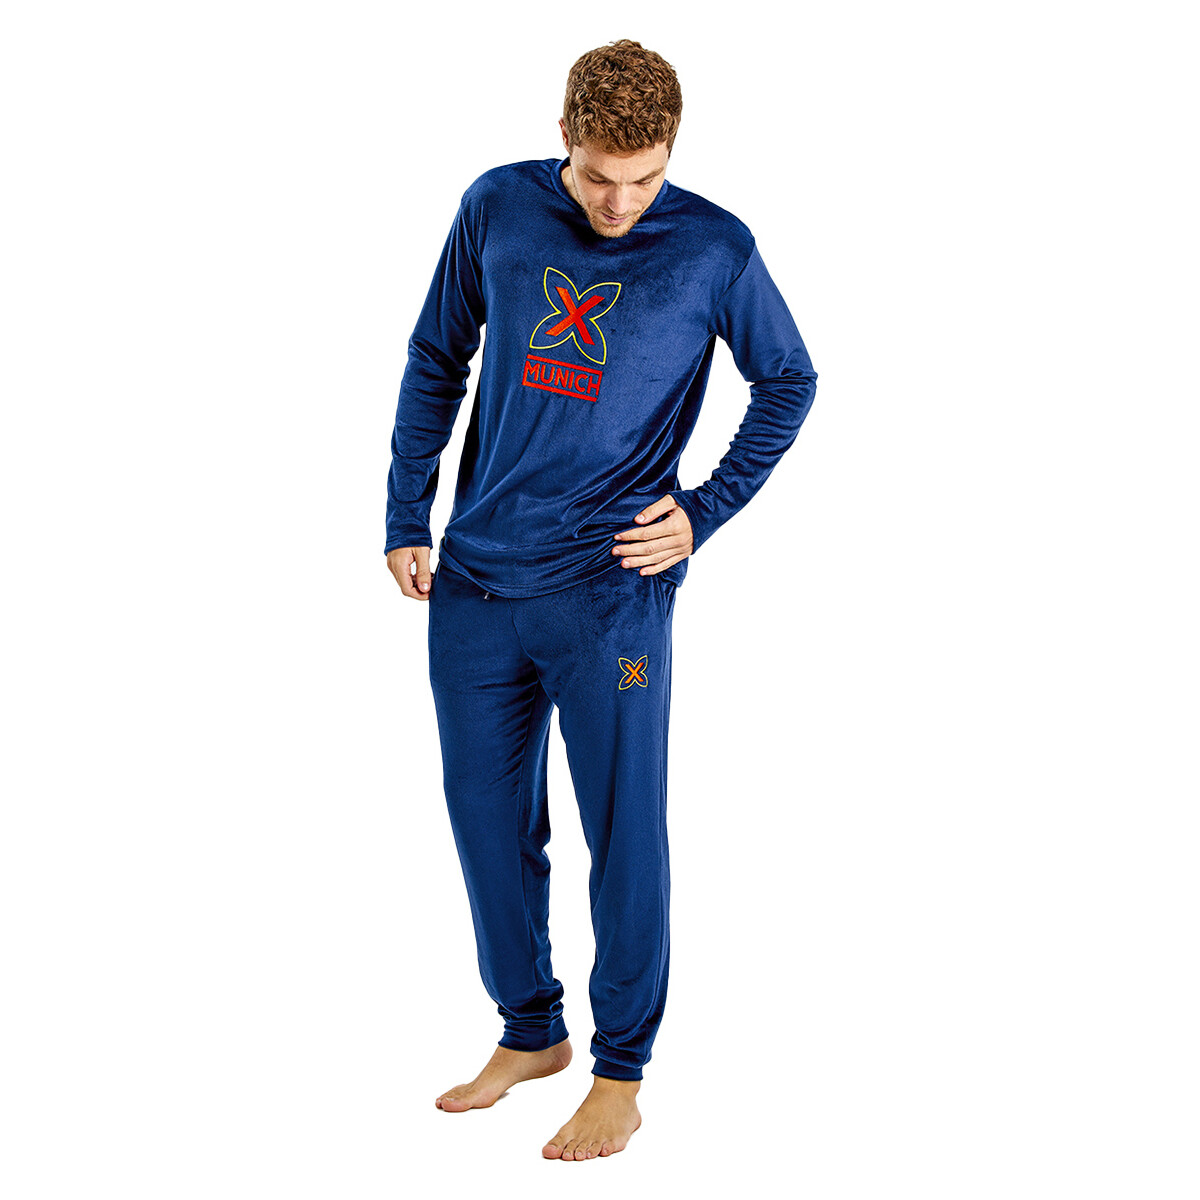 Textiel Heren Pyjama's / nachthemden Munich MUDP0450 Blauw